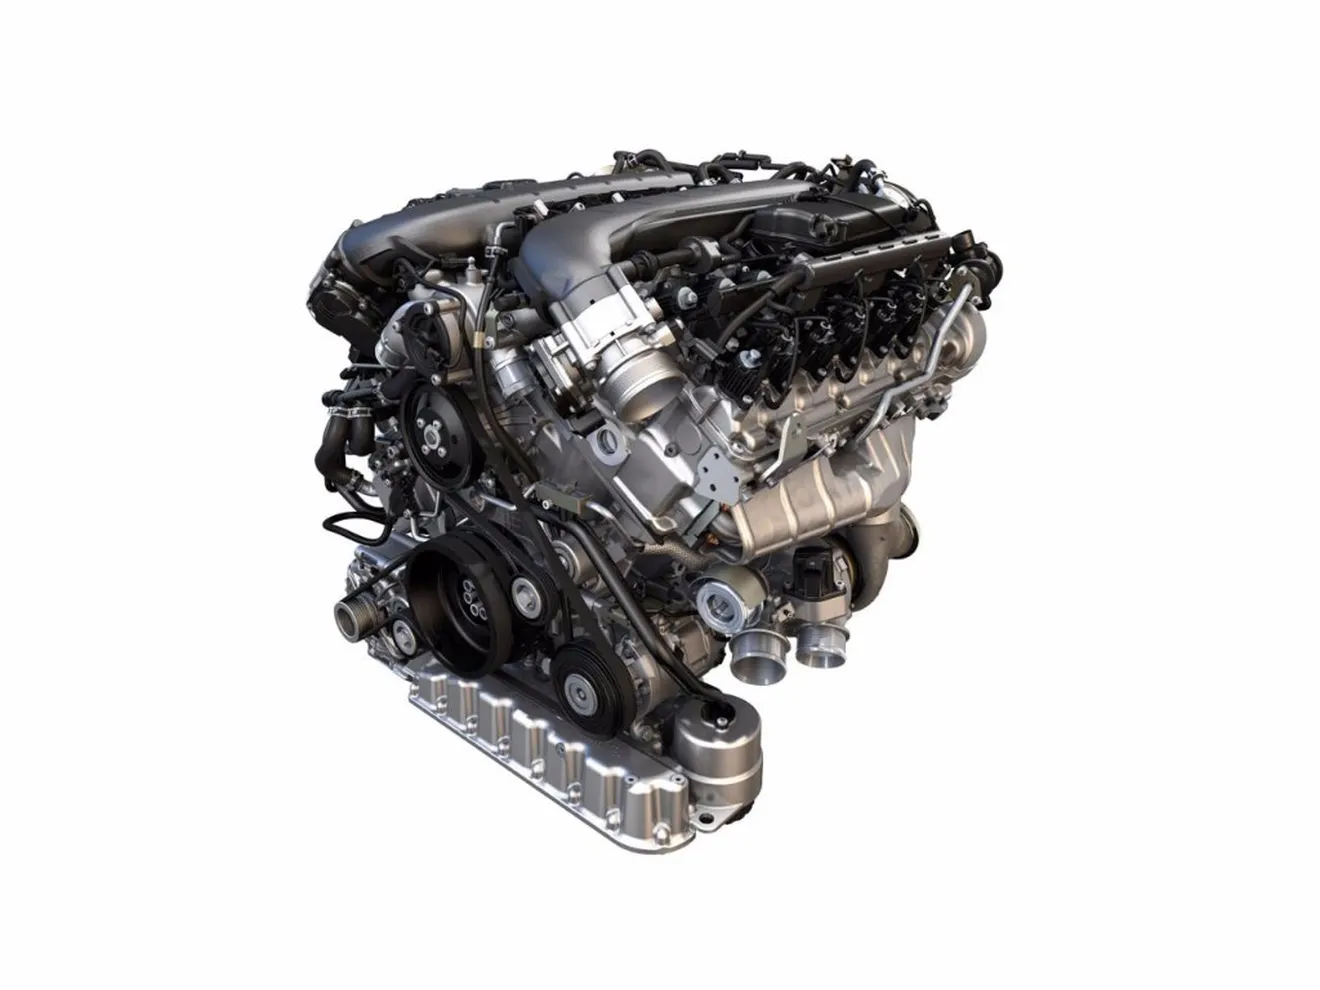 Volkswagen presenta el motor TSI W12 de nueva generación